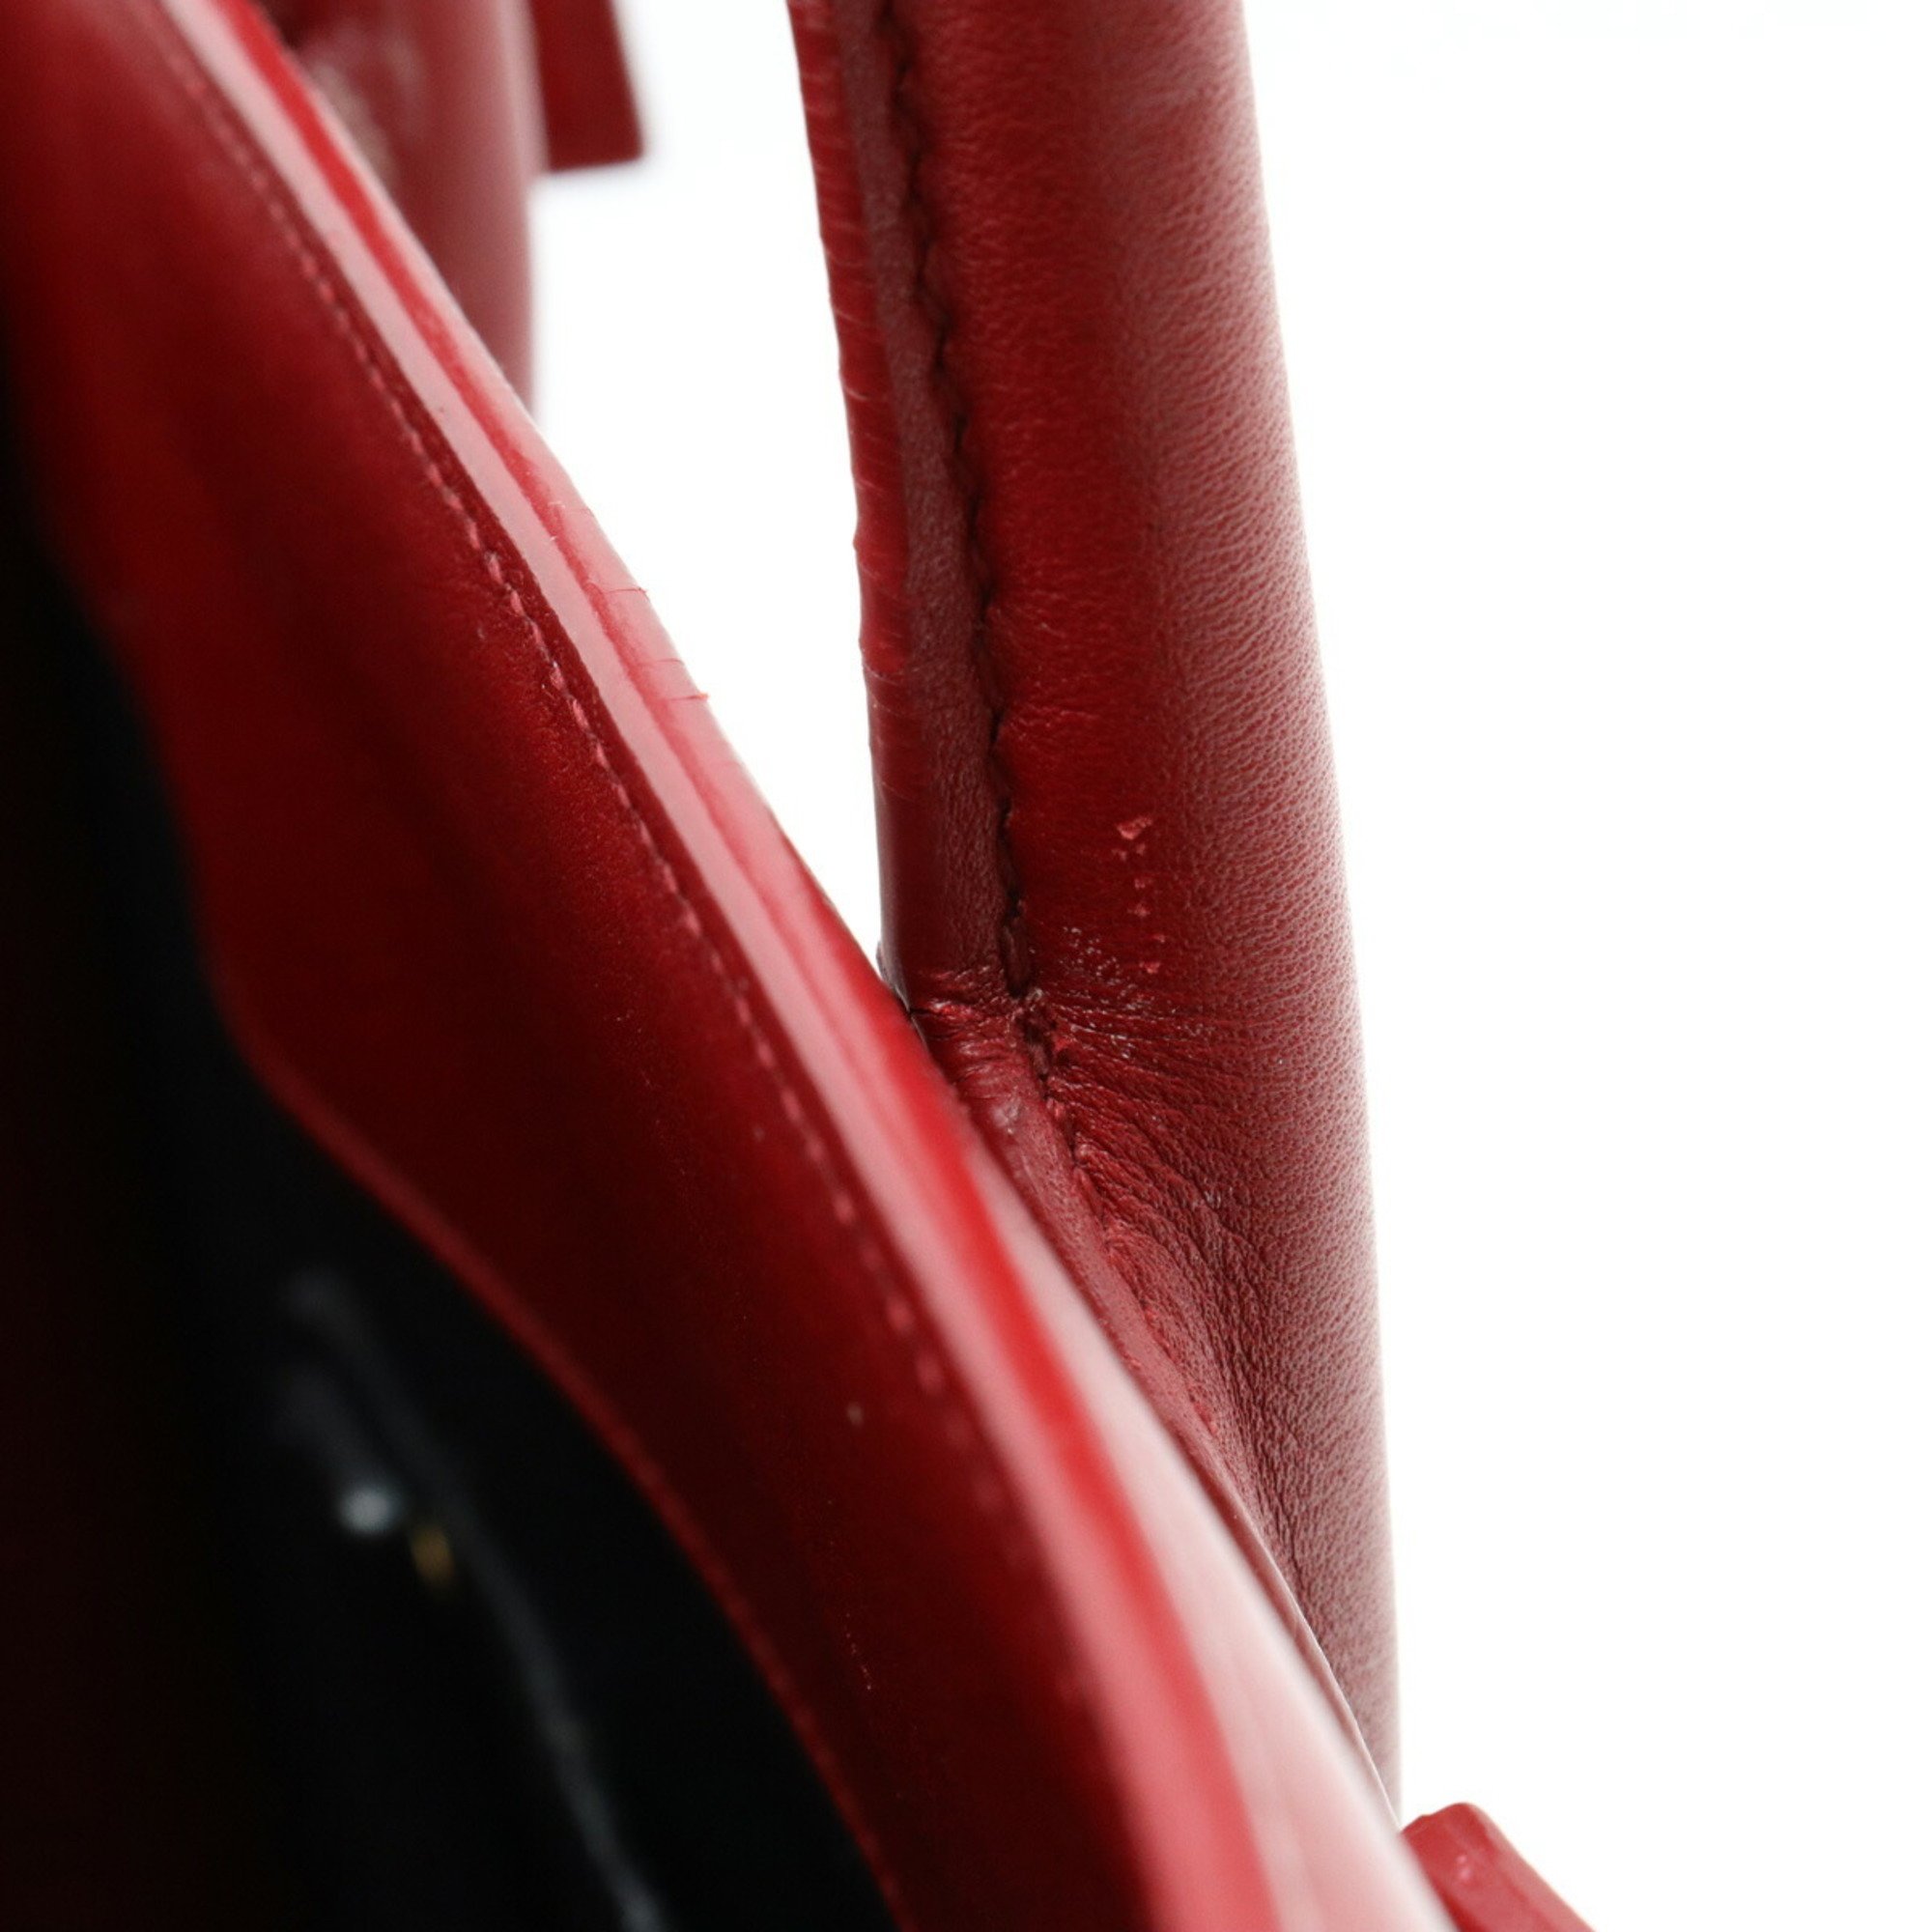 SAINT LAURENT PARIS YSL Yves Saint Laurent Sac de Jour Handbag Shoulder Leather Red 477477